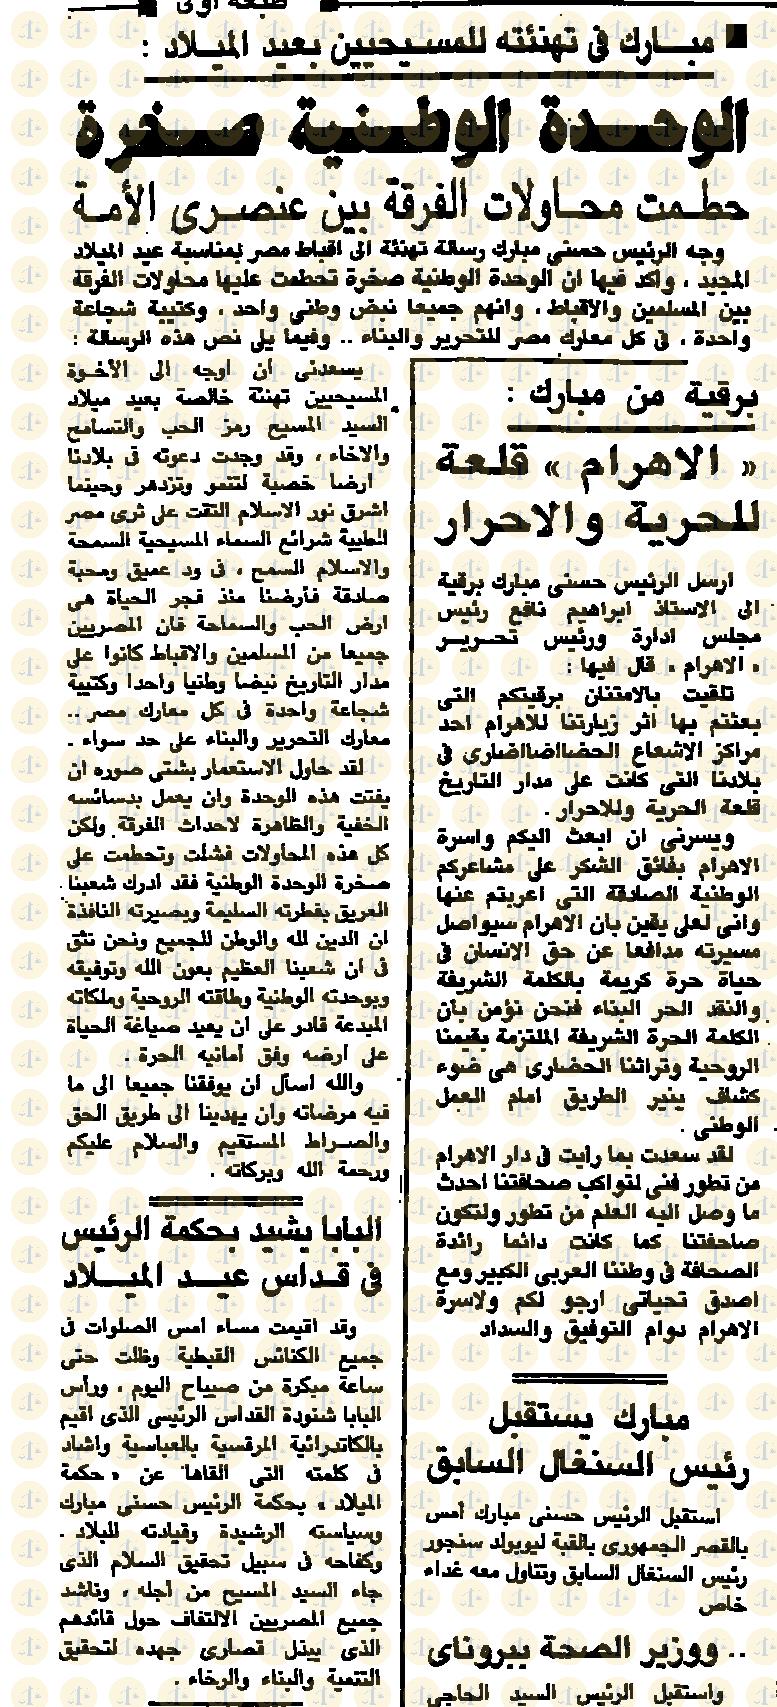 يوم 7 يناير 1985م، الأهرام، تهنئة مبارك وكلمته والبابا يشيد، ص1